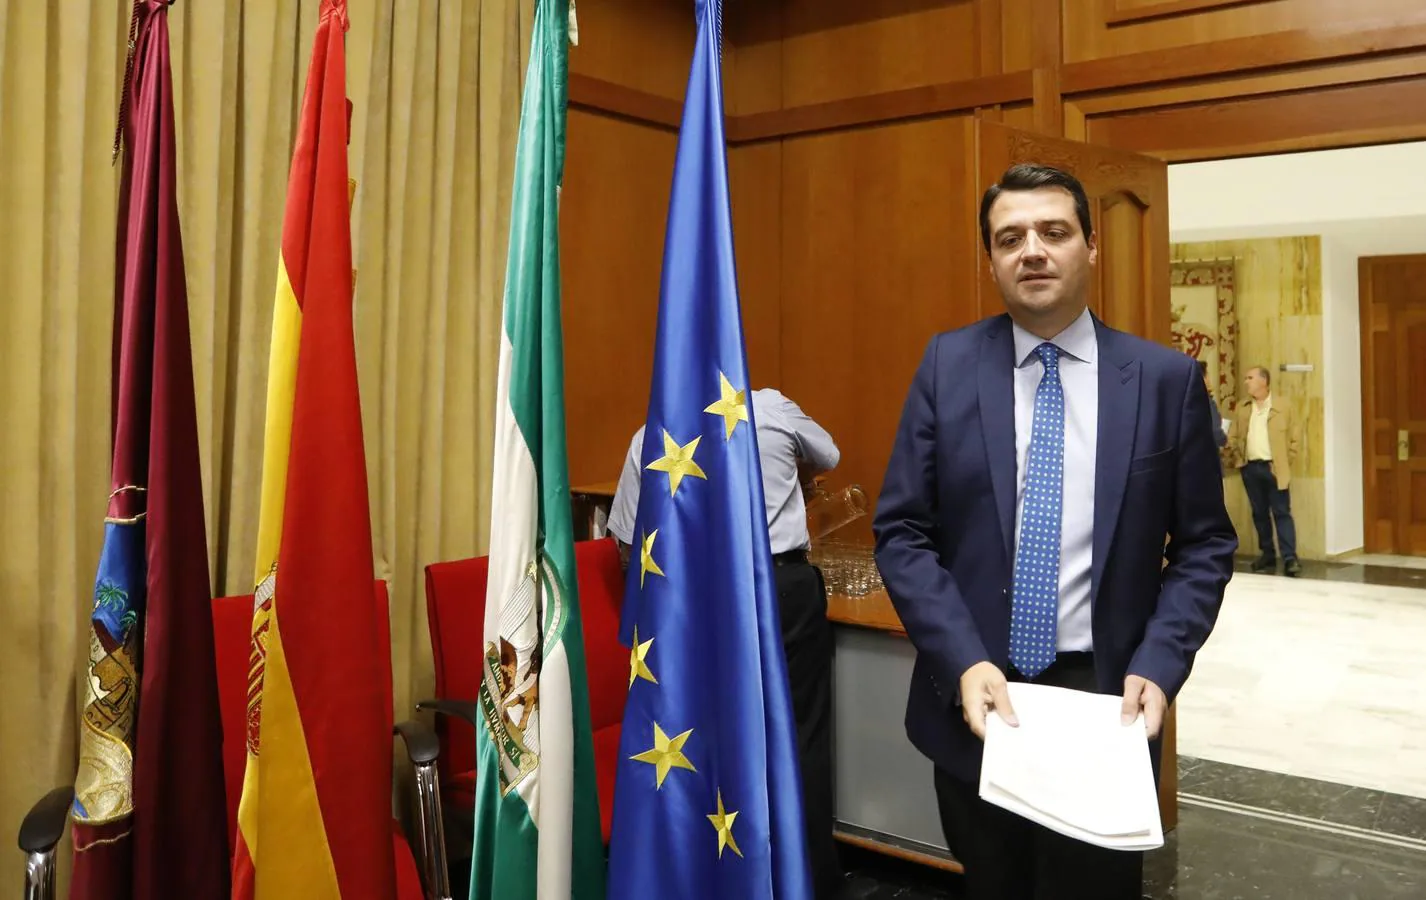 El Pleno del Ayuntamiento de Córdoba, en imágenes